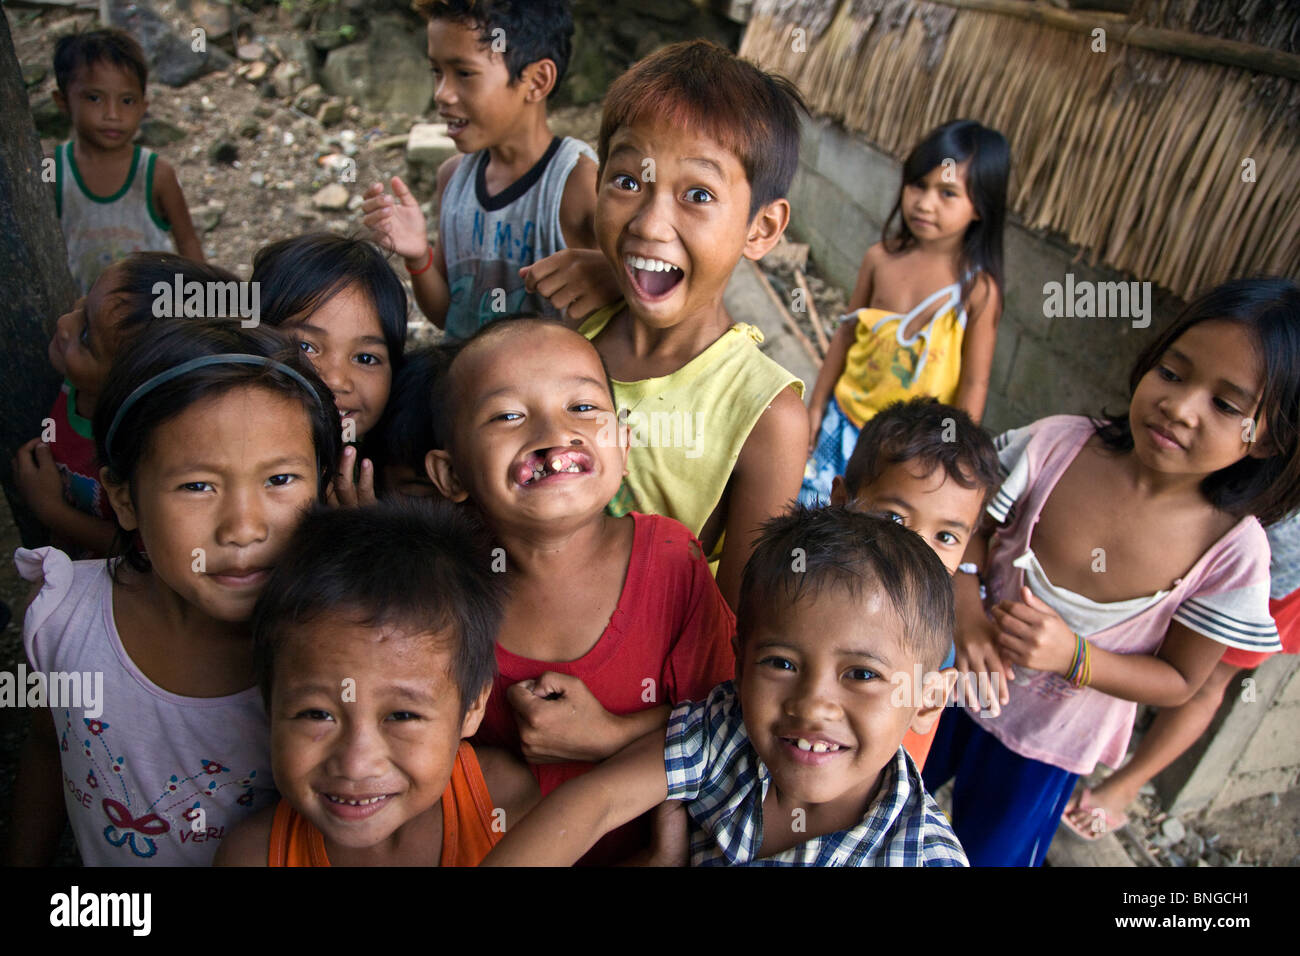 Lächelnden philippinischen Kindern in einem kleinen Fischerdorf nördlich von EL NIDO - Insel PALAWAN, Philippinen Stockfoto